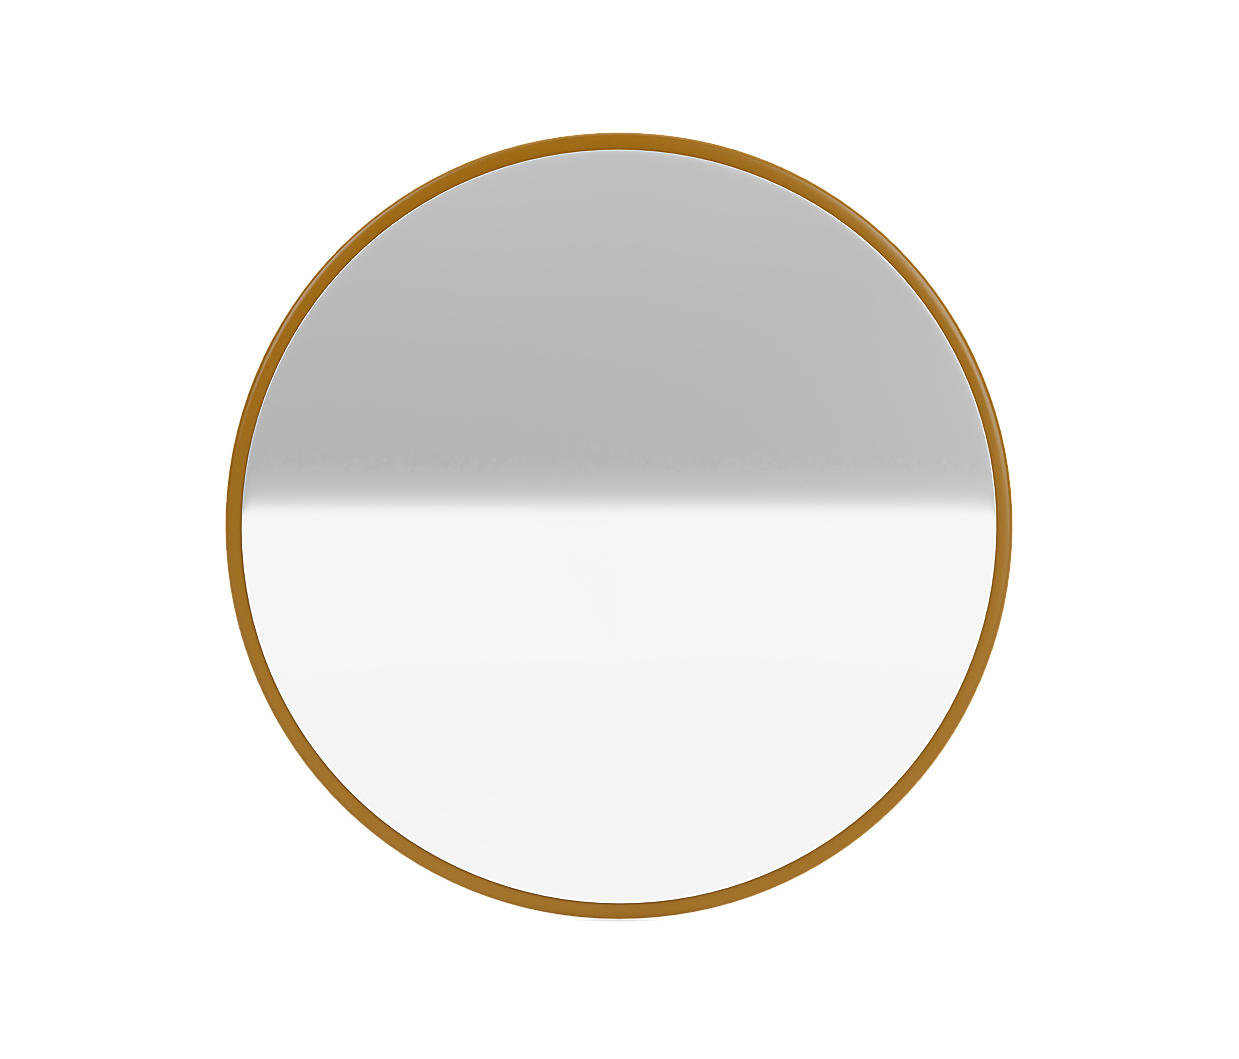 Montana Mini - Small round mirror